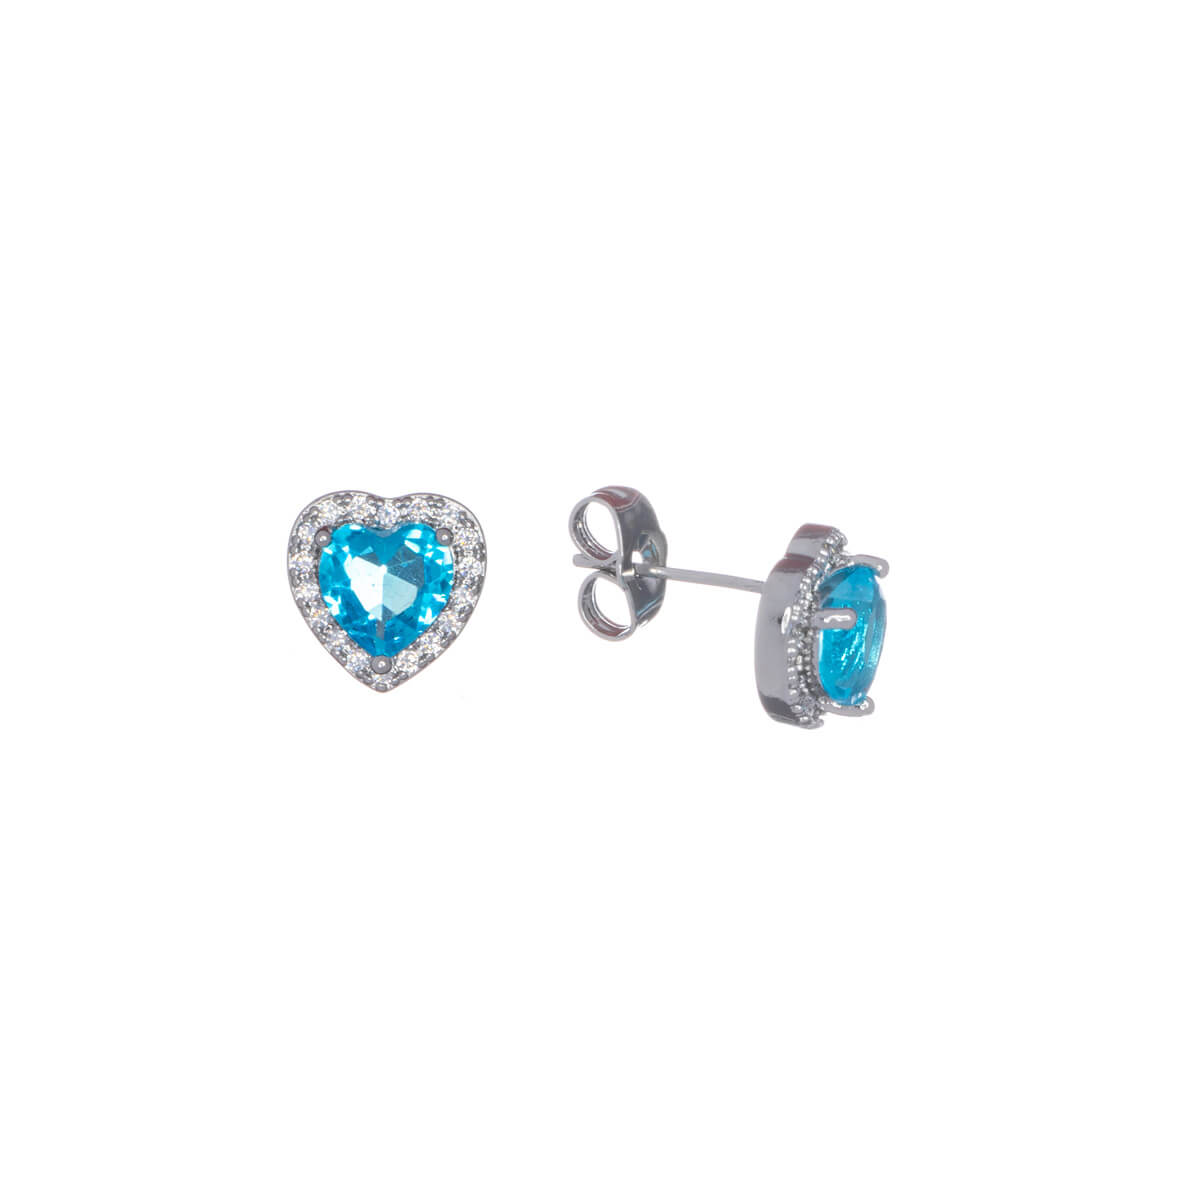 Zirconia heart earrings